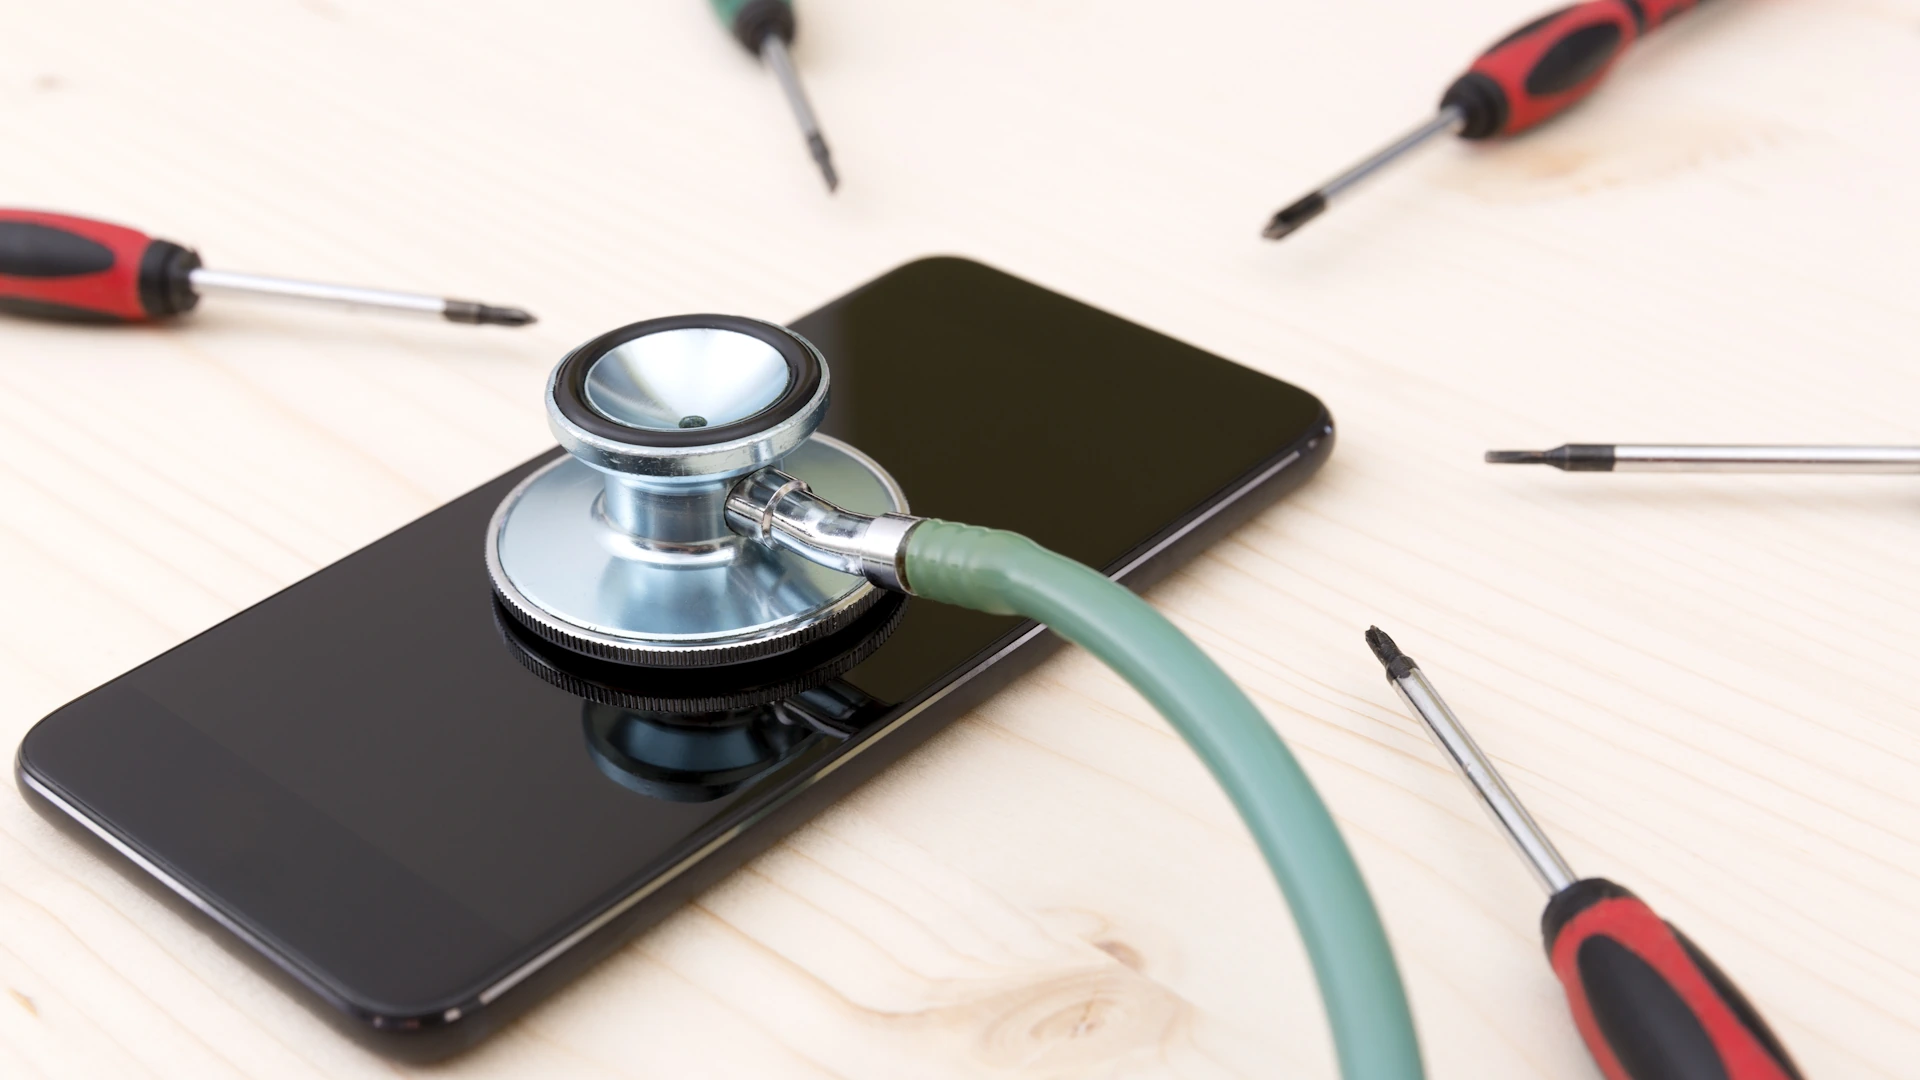 Android telefoni možda konačno dobiju pokazatelj zdravlja baterije